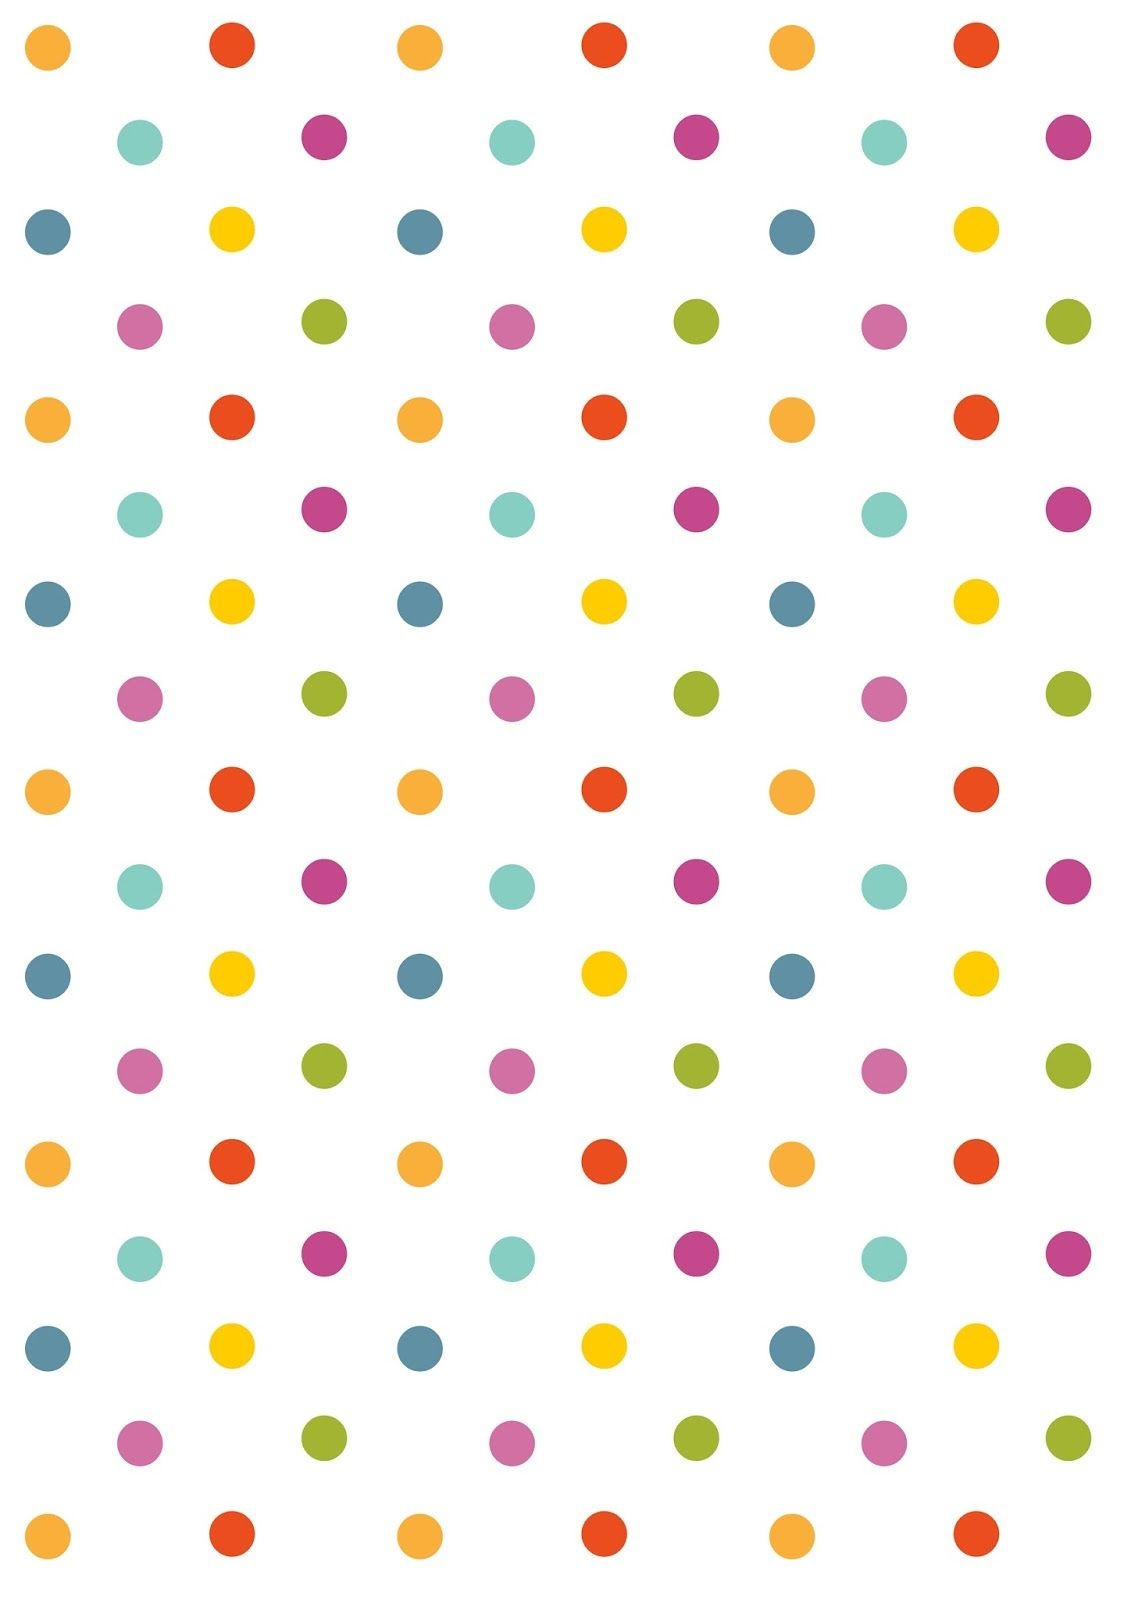 Free Digital Polka Dot Scrapbooking Paper - Ausdruckbares - Free Printable Pink Polka Dot Paper